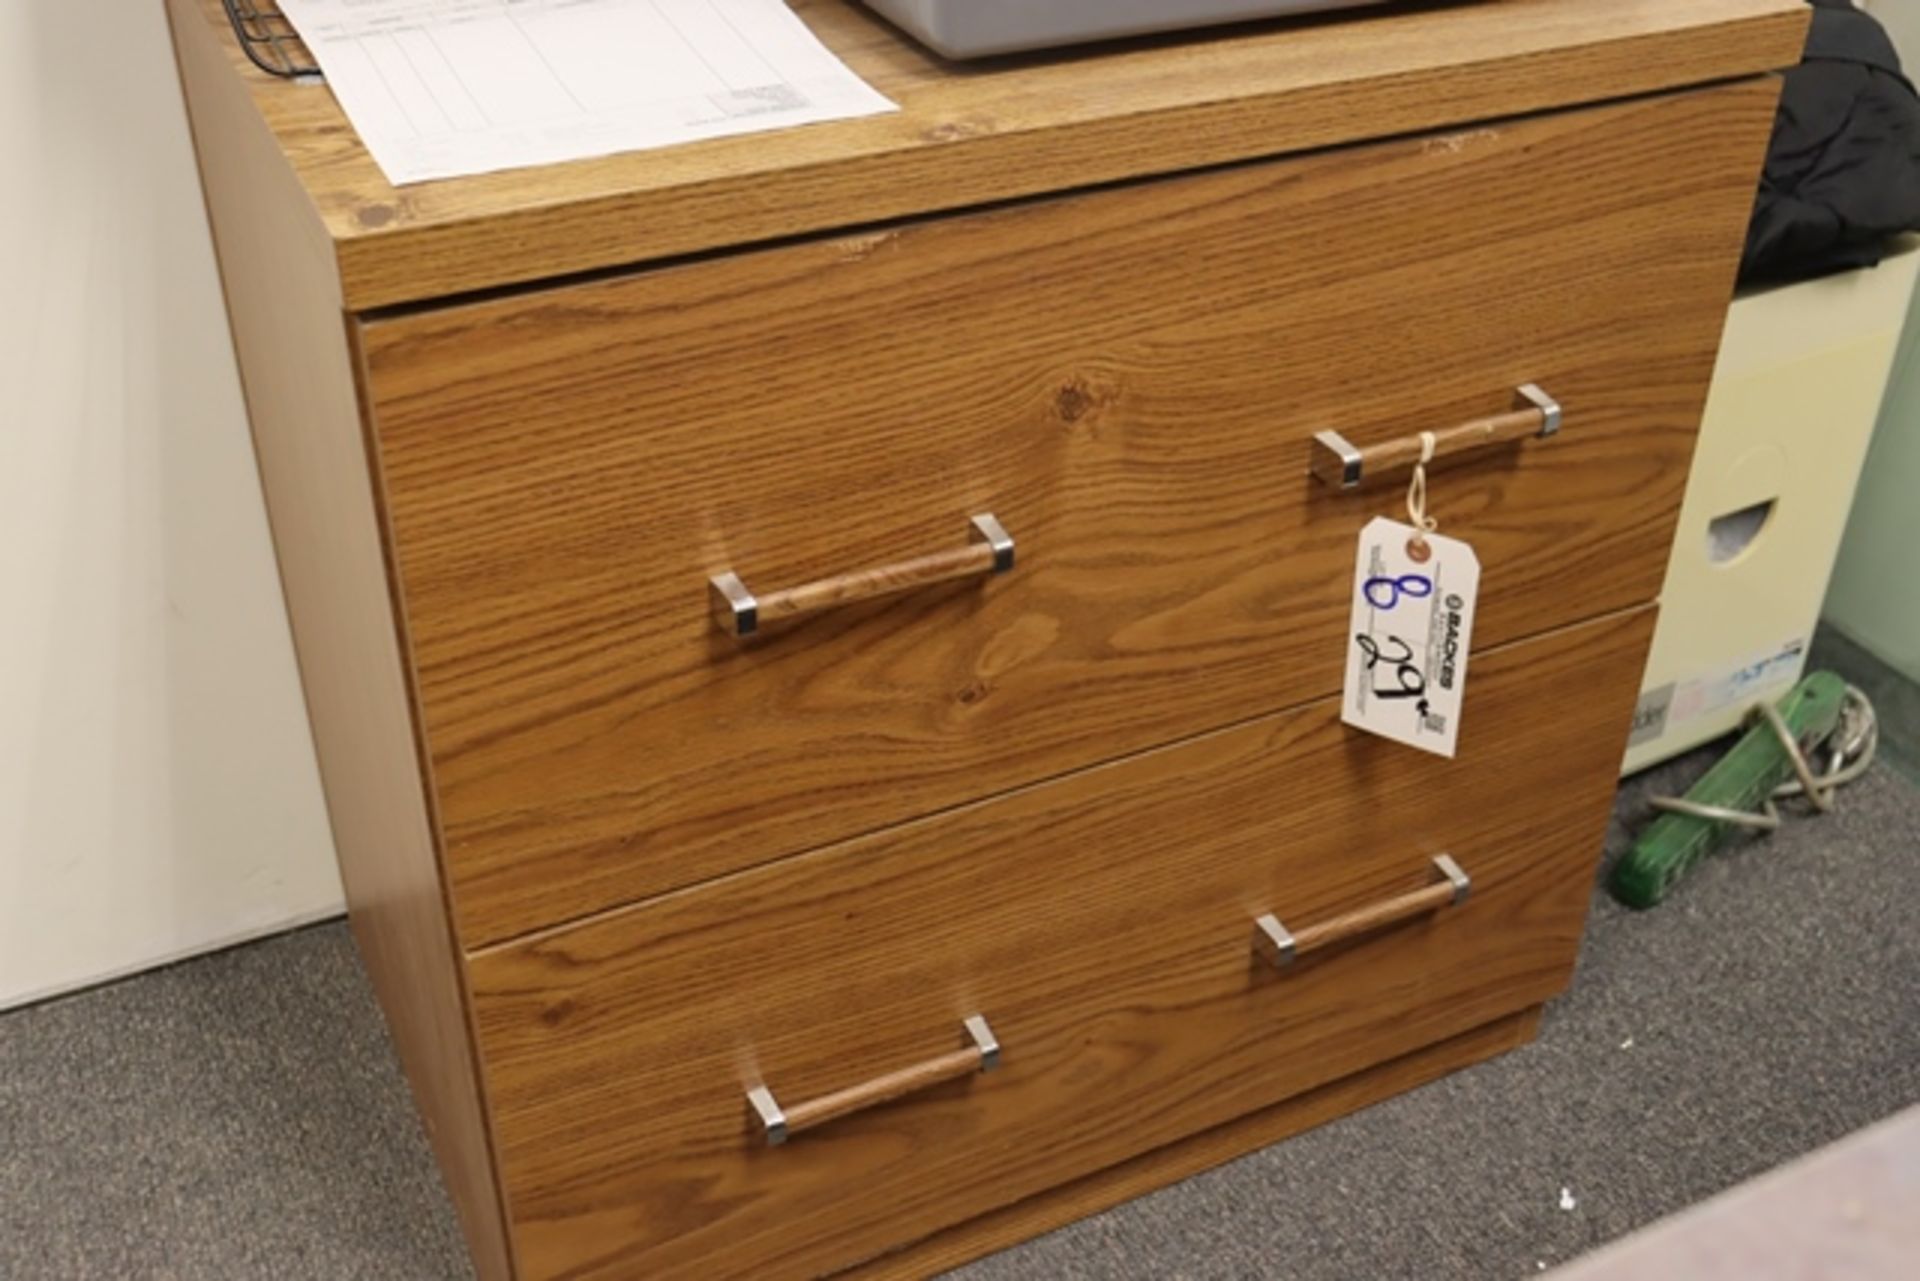 29" wood laminate 2 drawer file cabinet